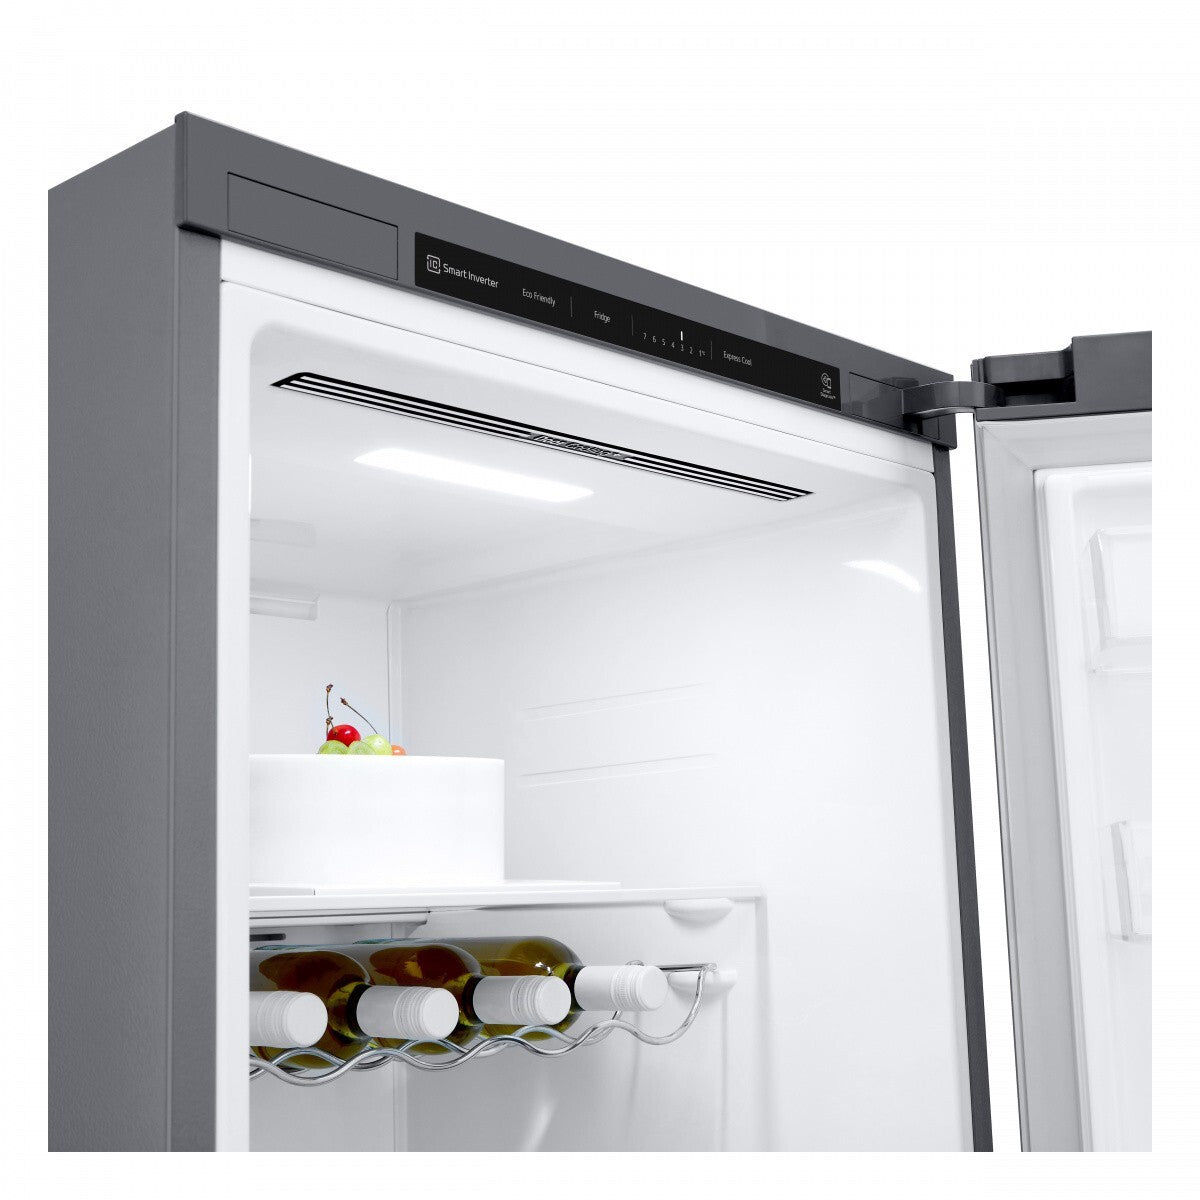 Jednodveřová lednice LG GLT51PZGSZ